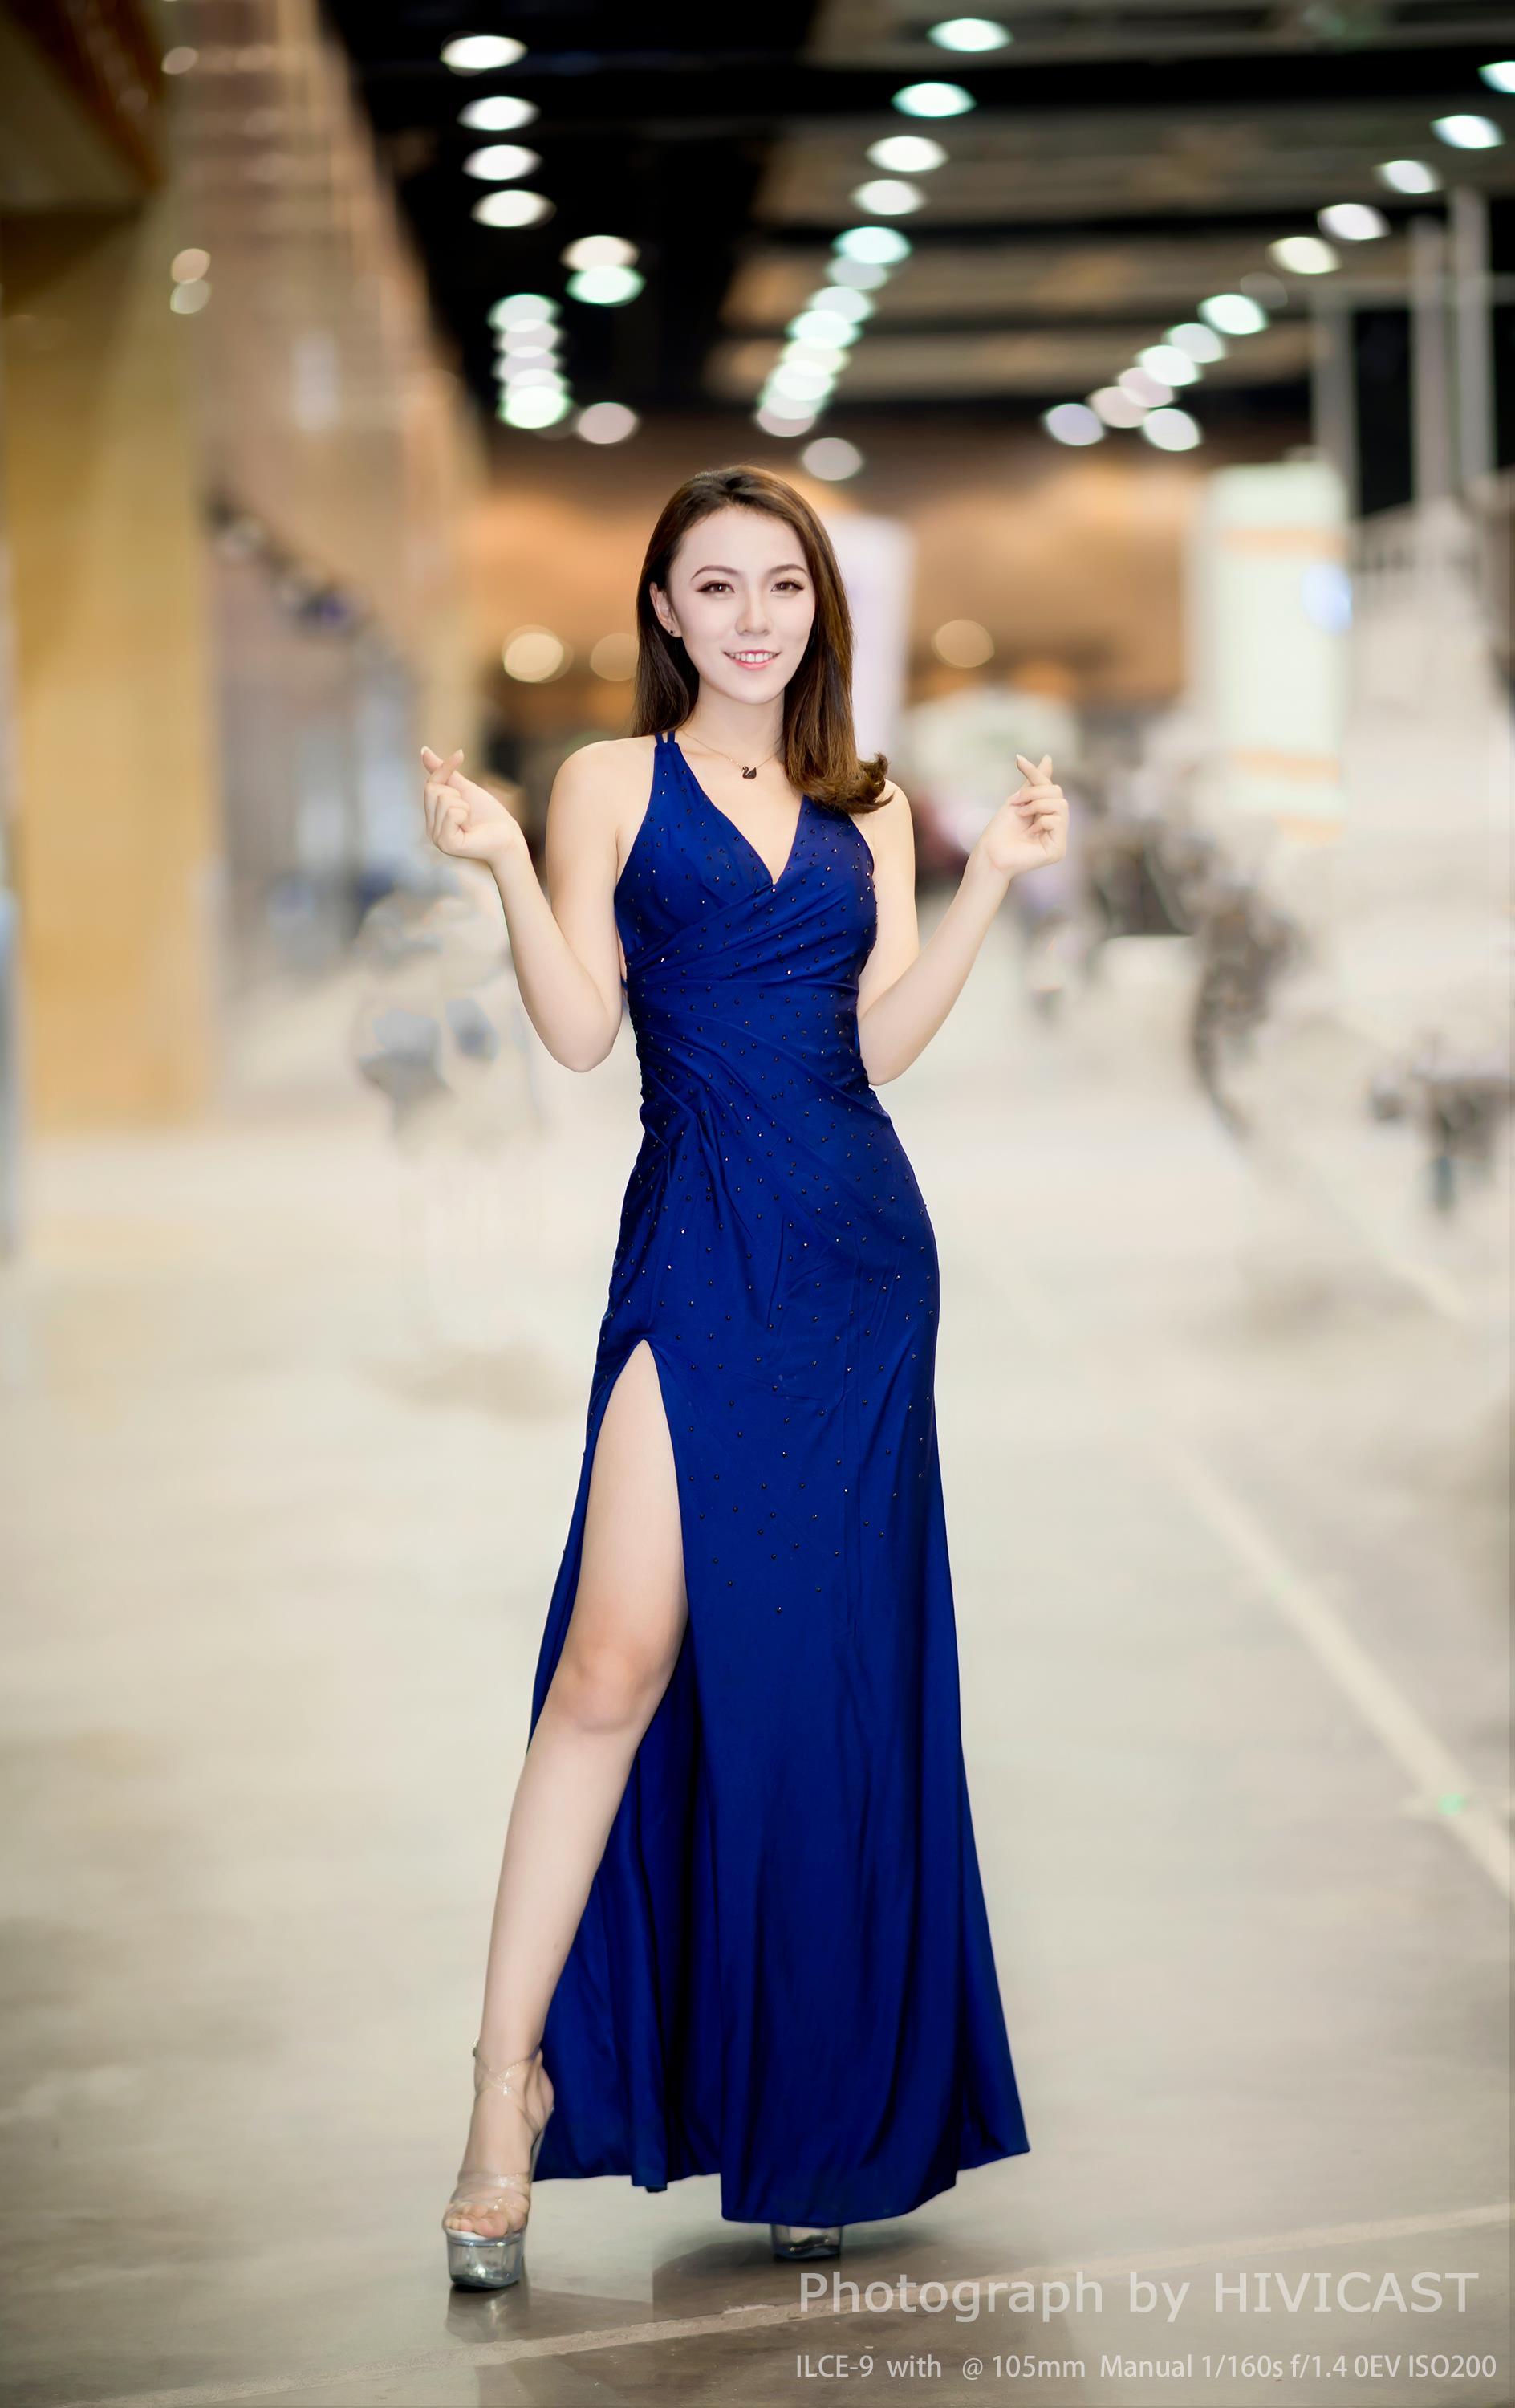 2017沈阳车展 北京现代汽车展台 美女车模蓝色高叉裸背连身裙写真,